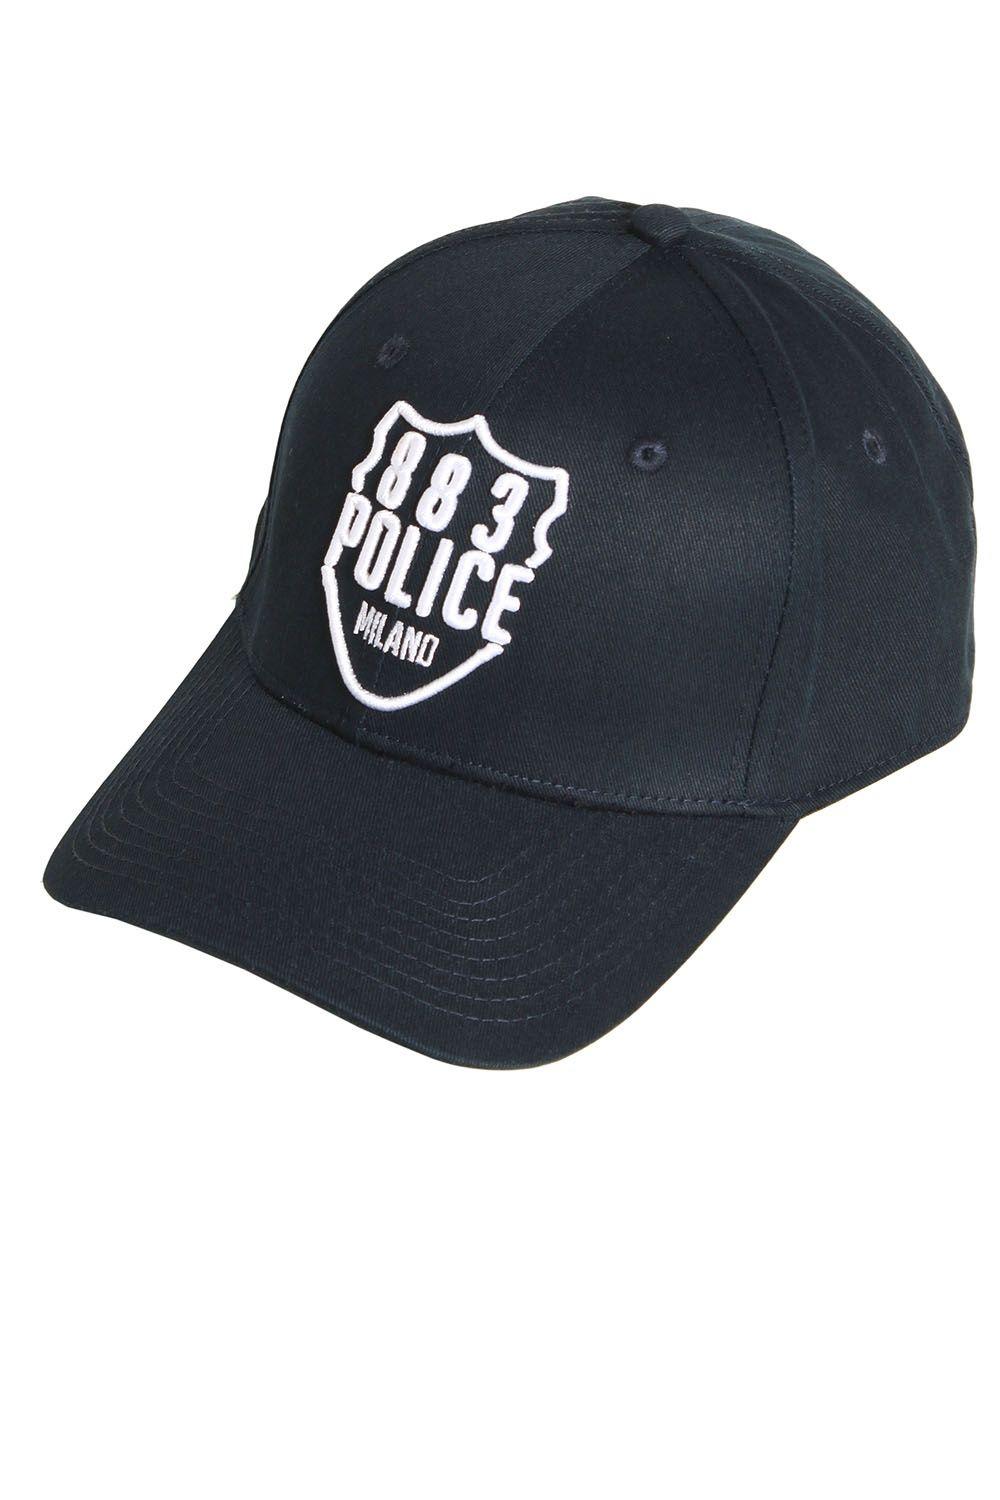 Police Cap Logo - Police Titan Baseball Cap. Shop 883 Police Caps & Accessories